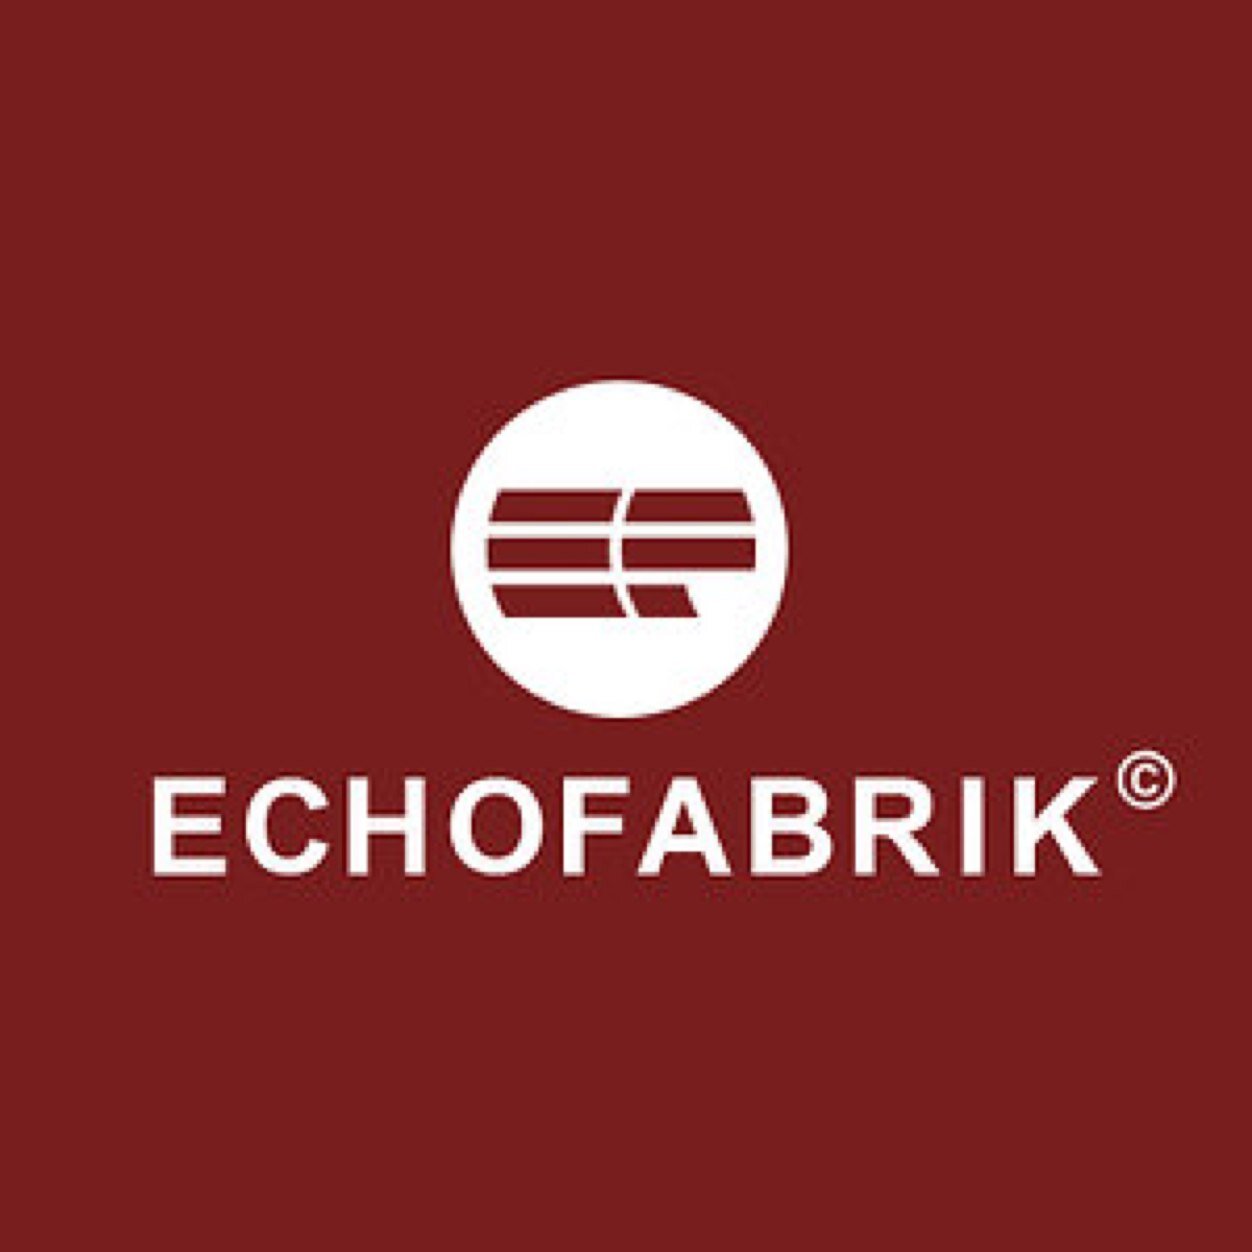 ECHOFABRIK Filmproduktion GmbH